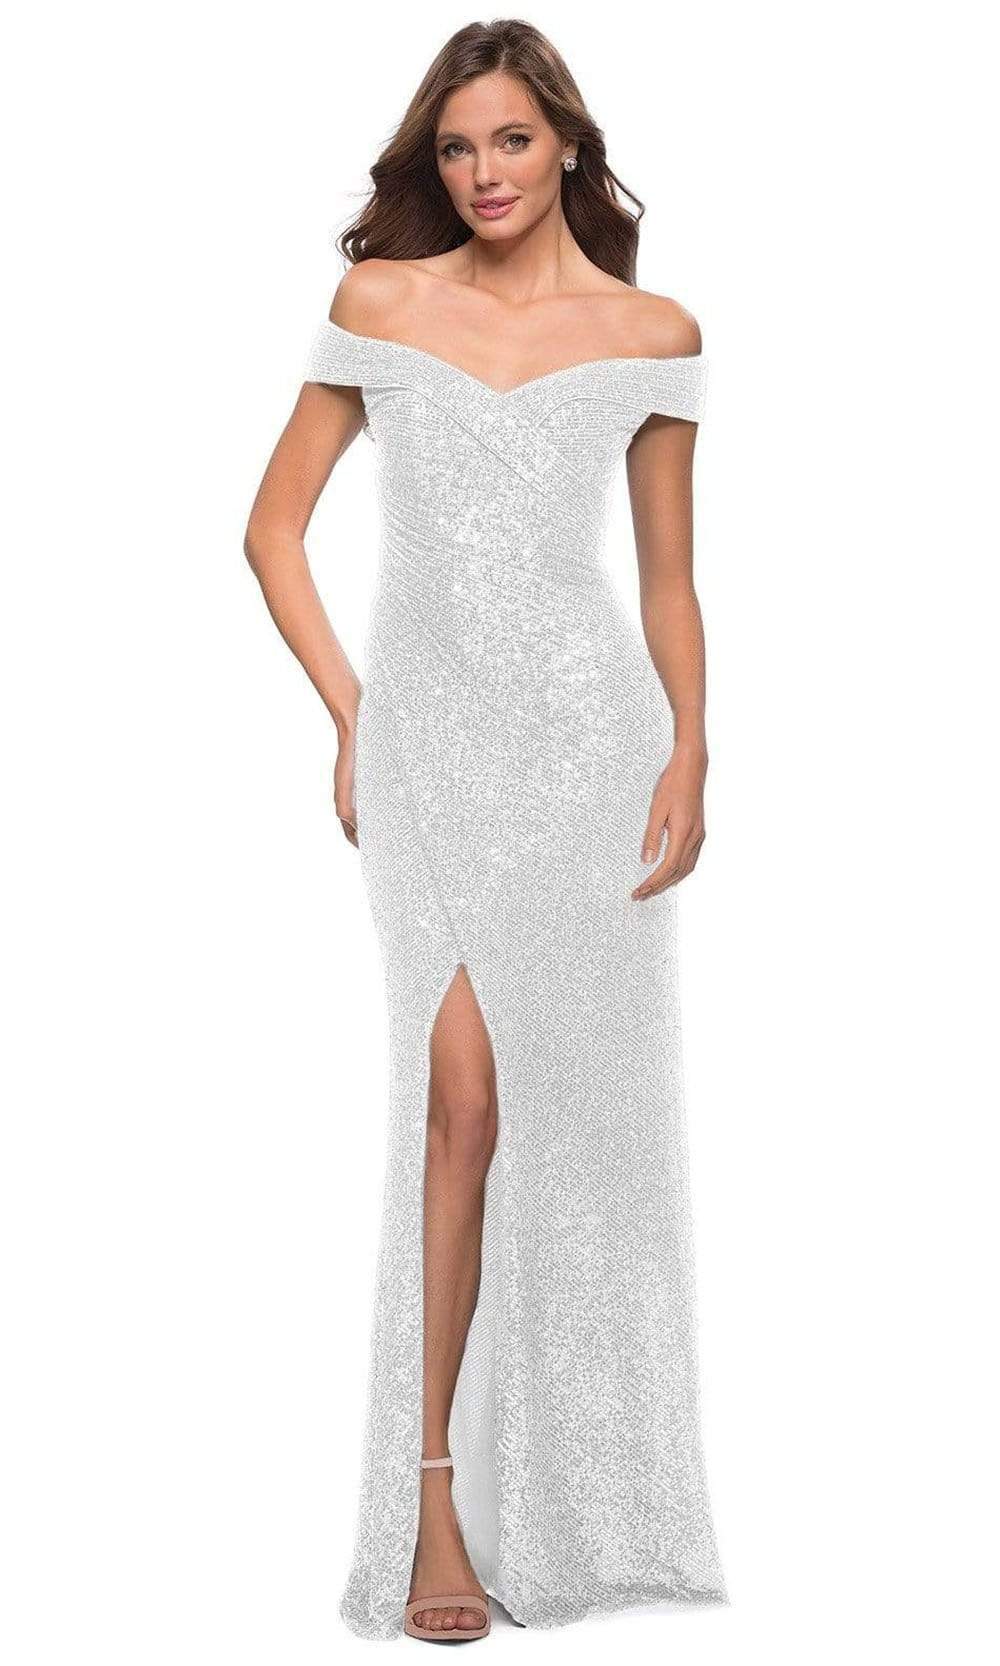 La Femme - 29831 Off Shoulder High Slit Full Sequin Gown
